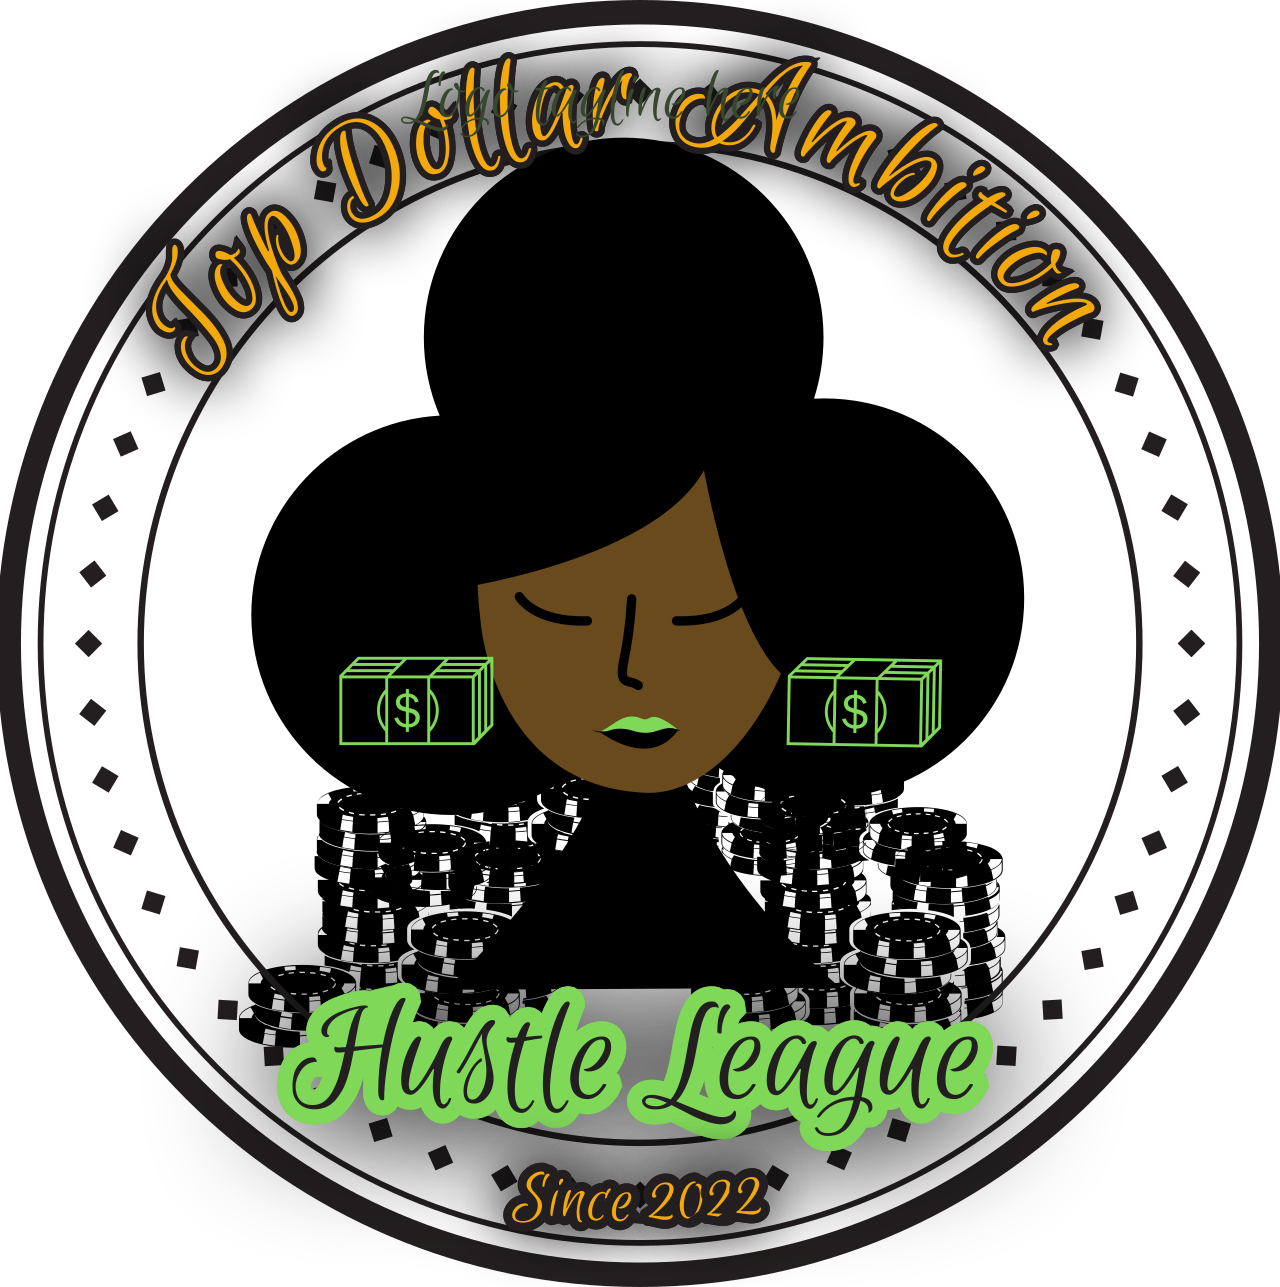 Hustle League's web page